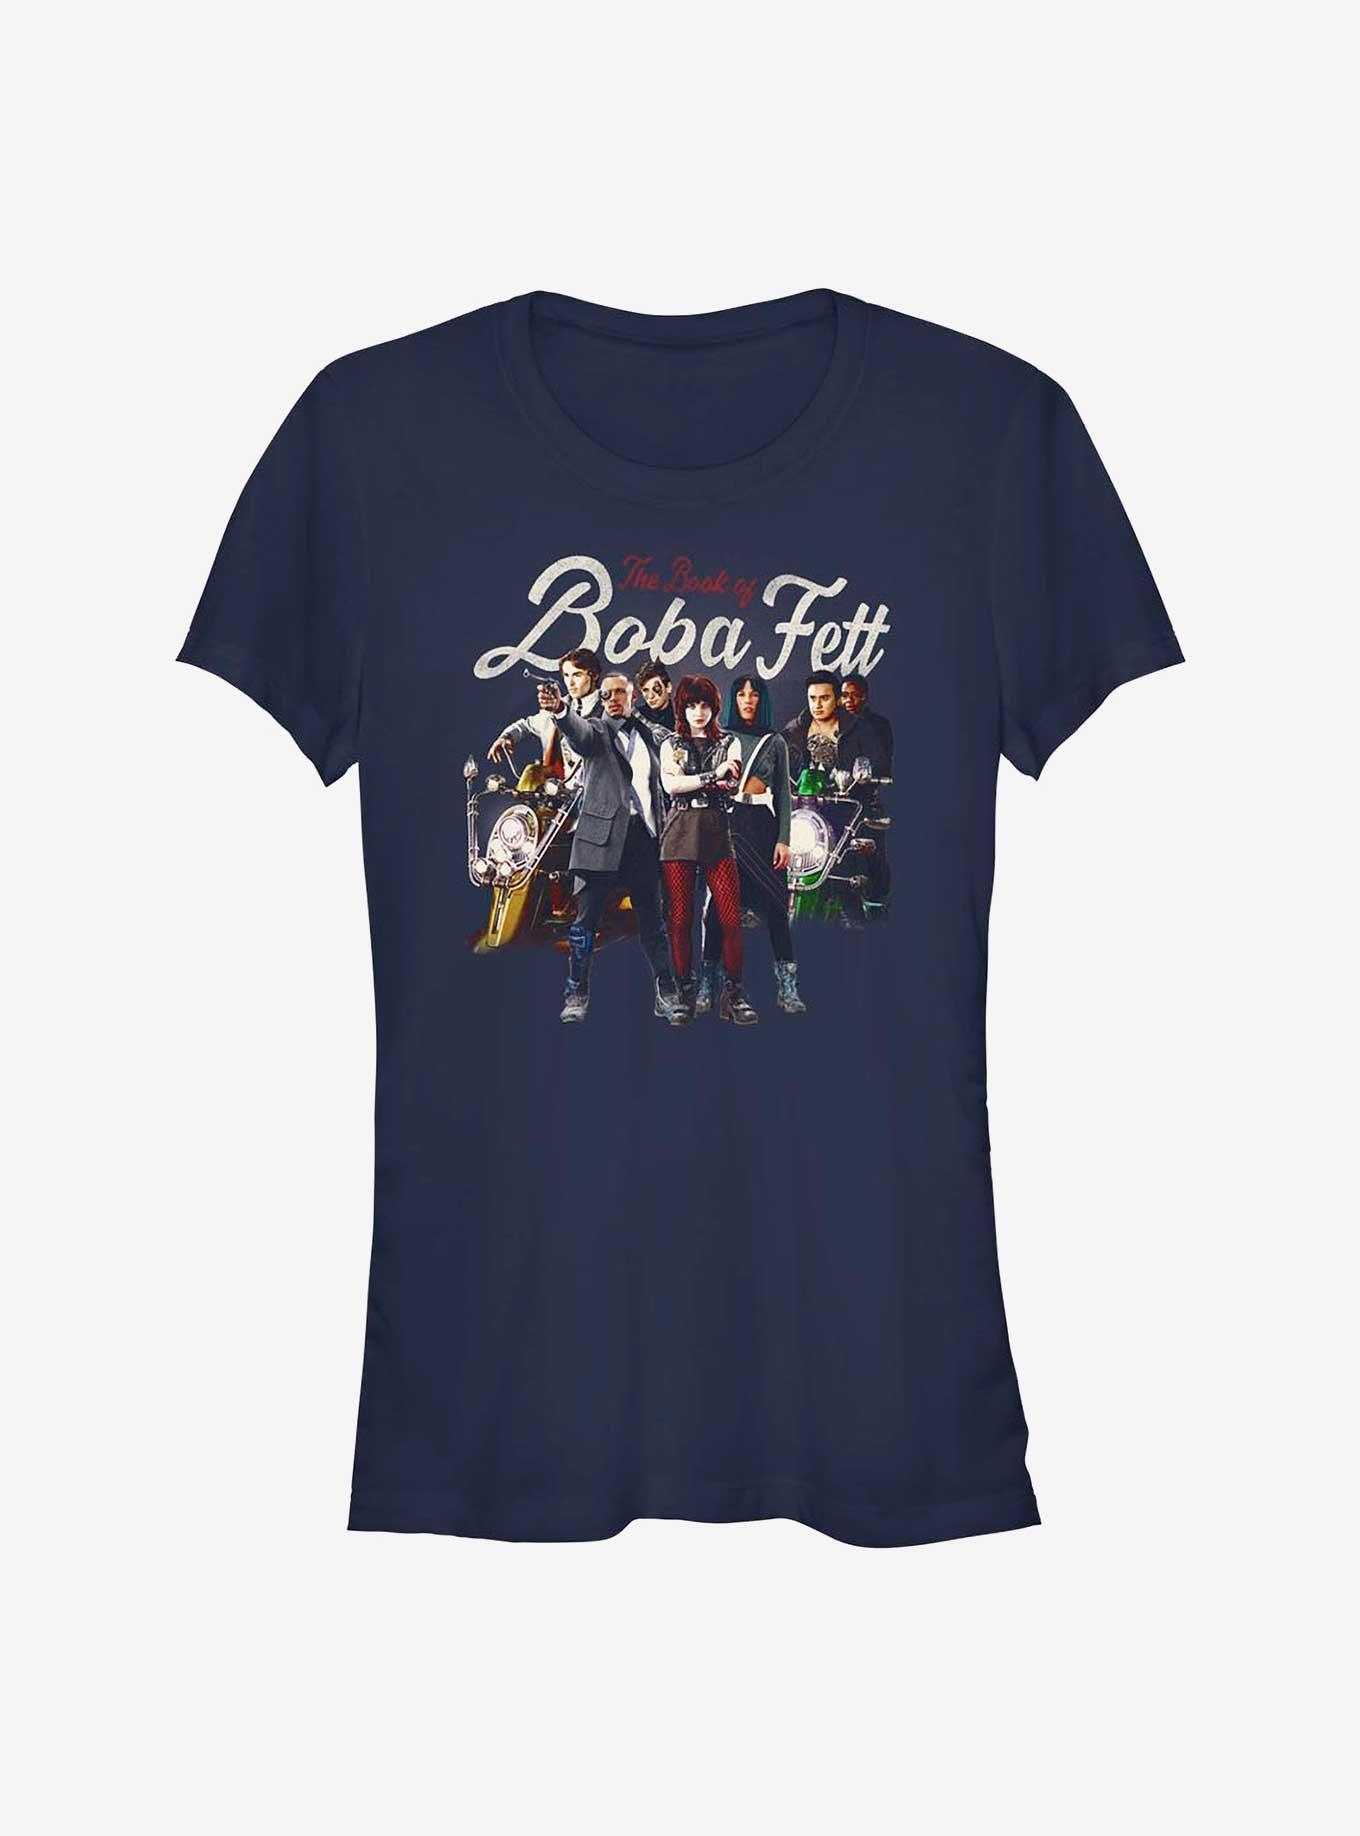 Star Wars The Book Of Boba Fett Support Plan Girls T-Shirt